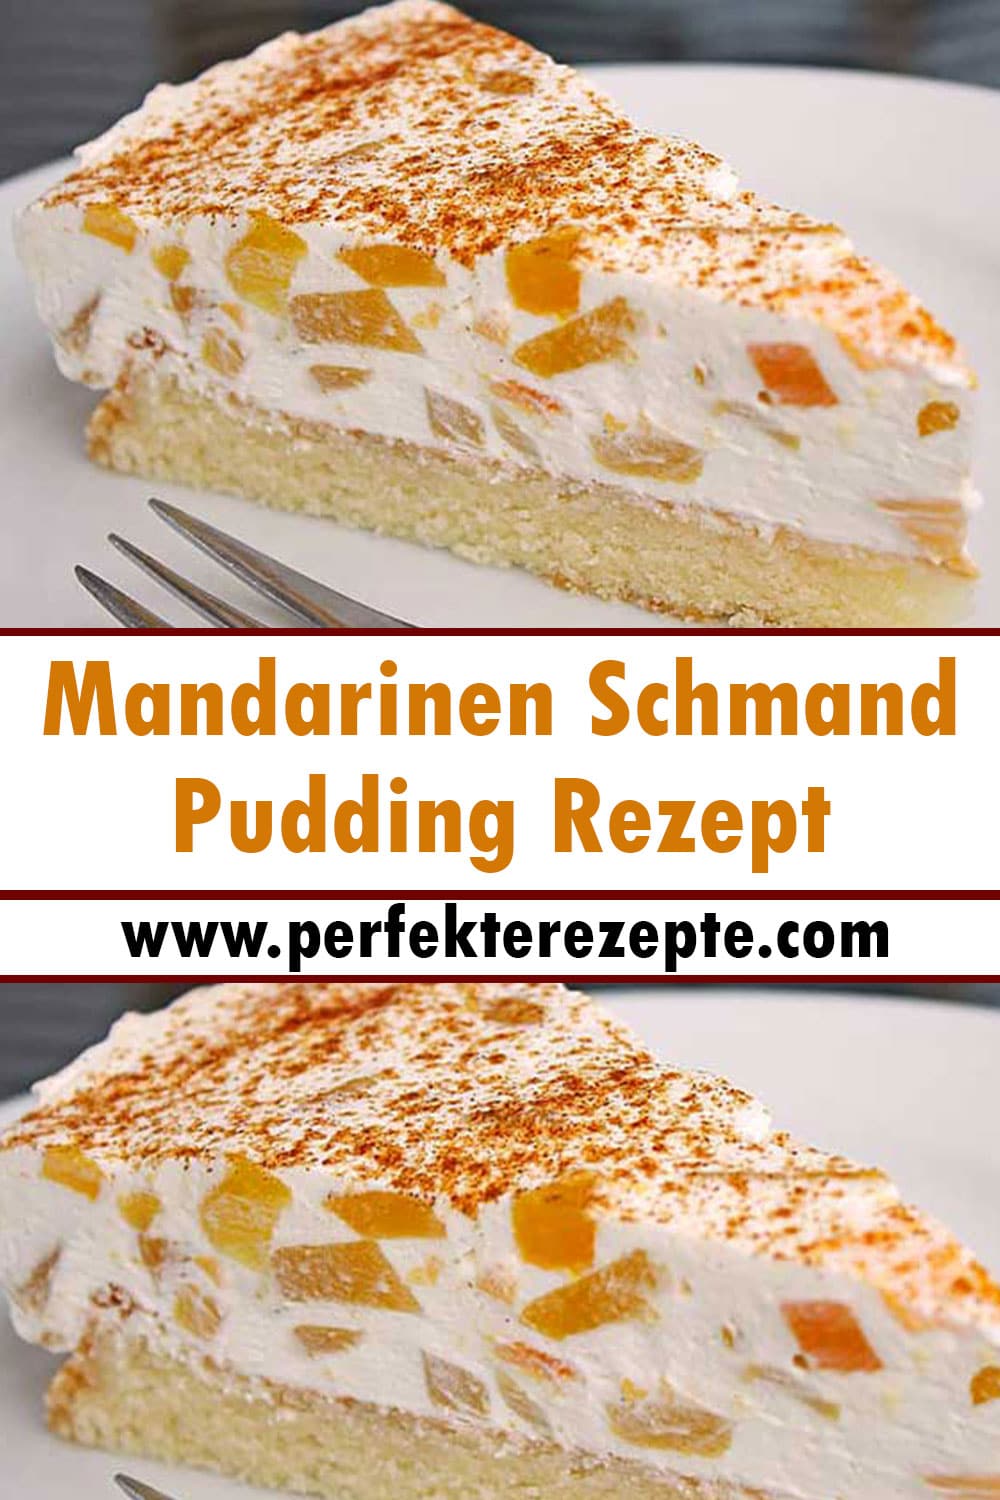 Mandarinen Schmand Pudding Rezept